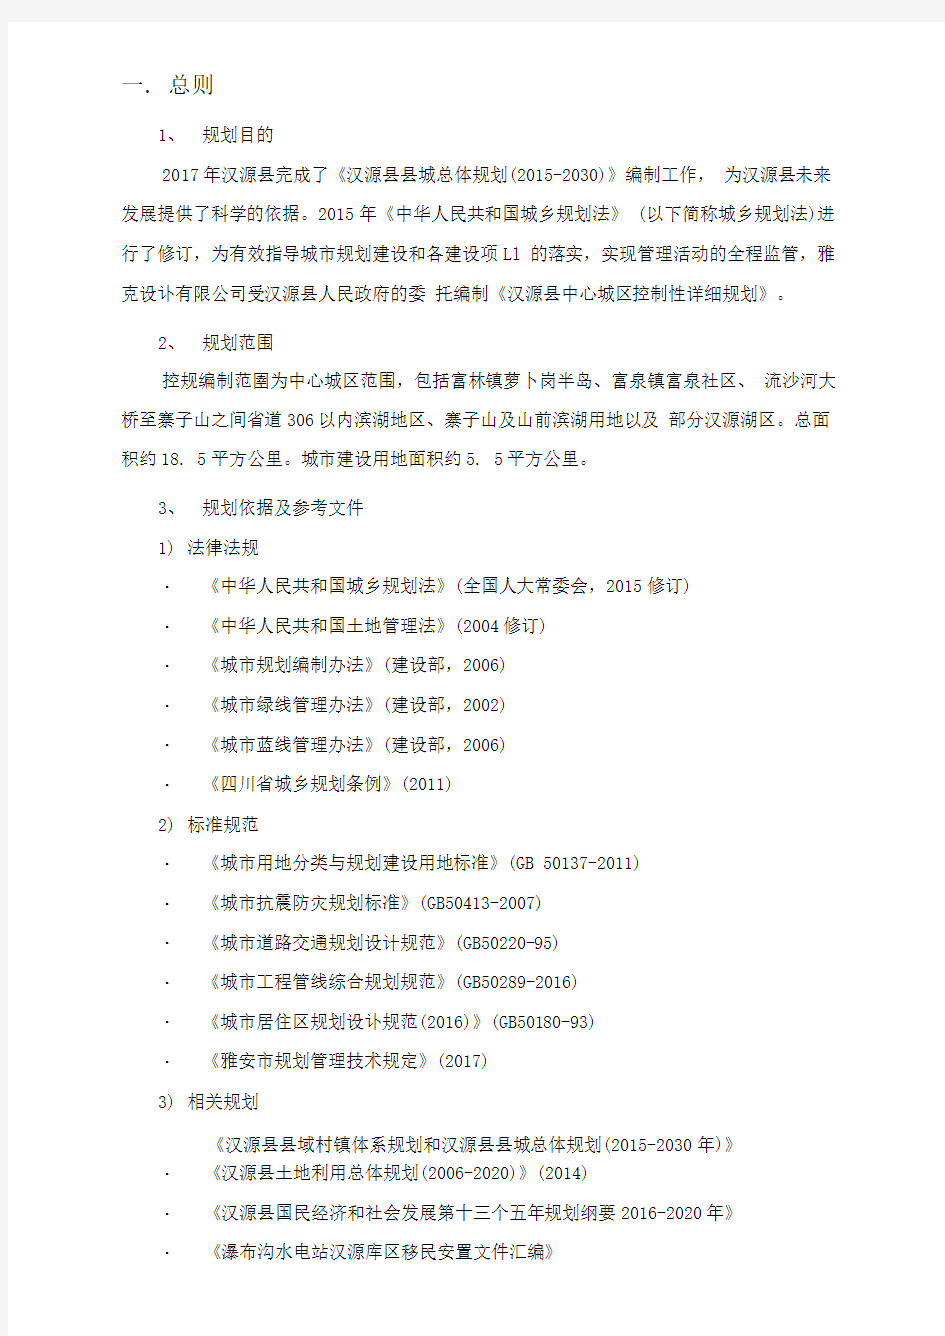 《汉源县中心城区控制性详细规划》主要内容